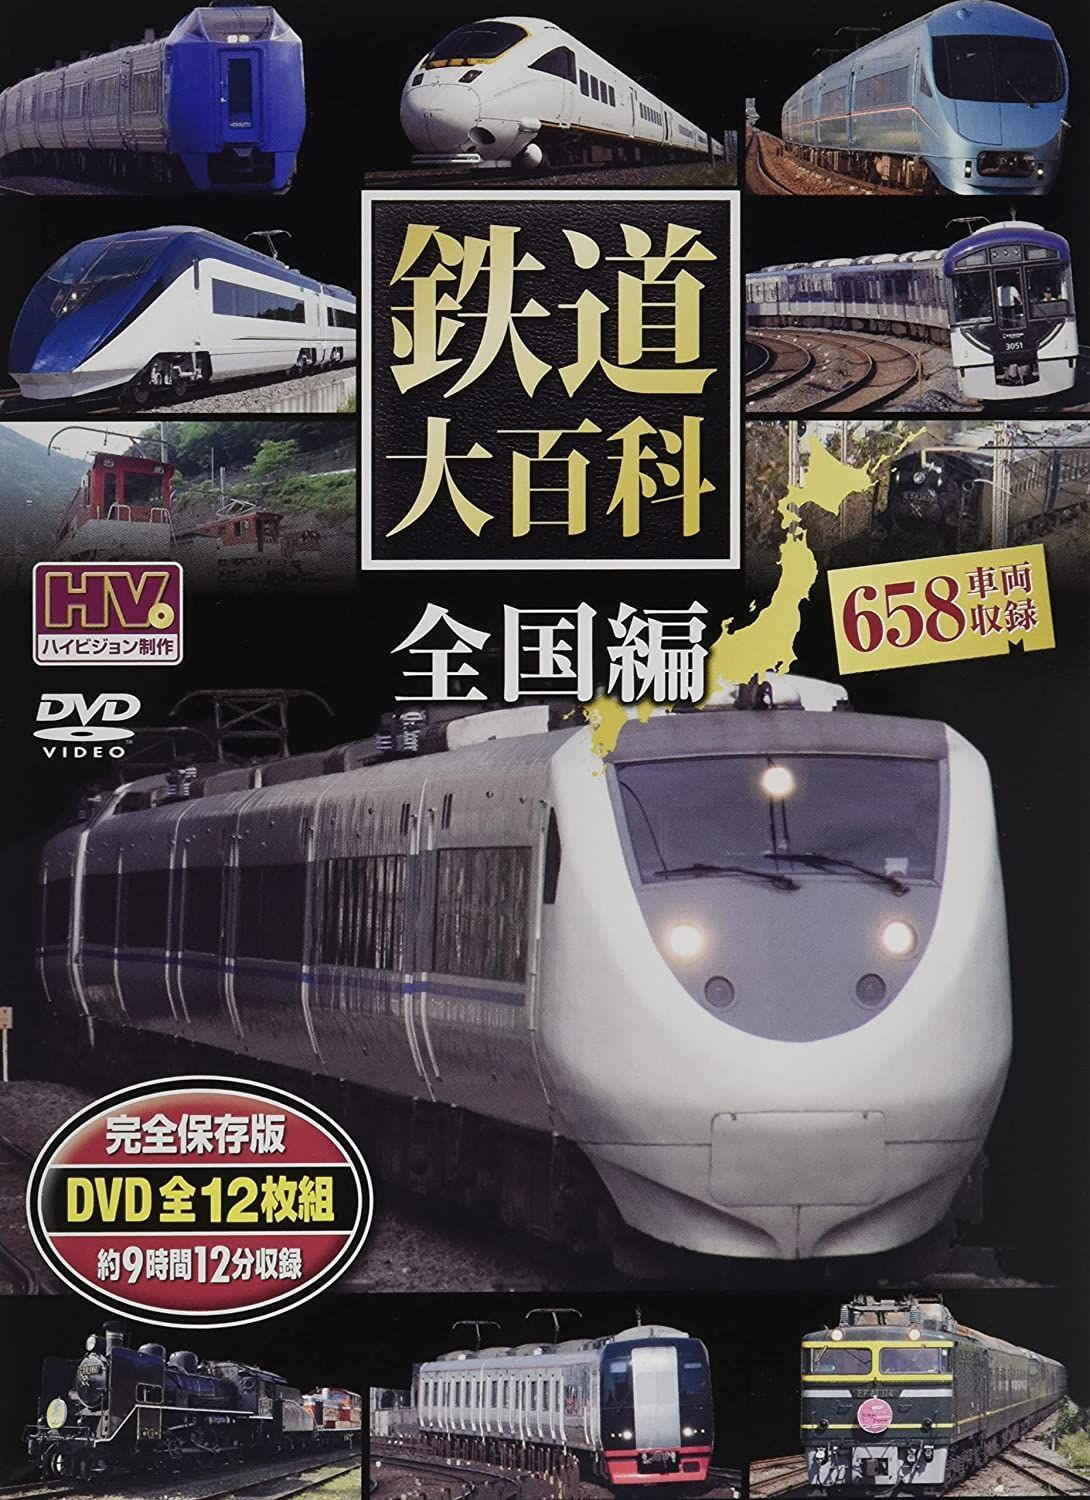 その他DVD 日本の新幹線・特急 映像と走行音で愉しむ鉄道のの世界 - 趣味・教養